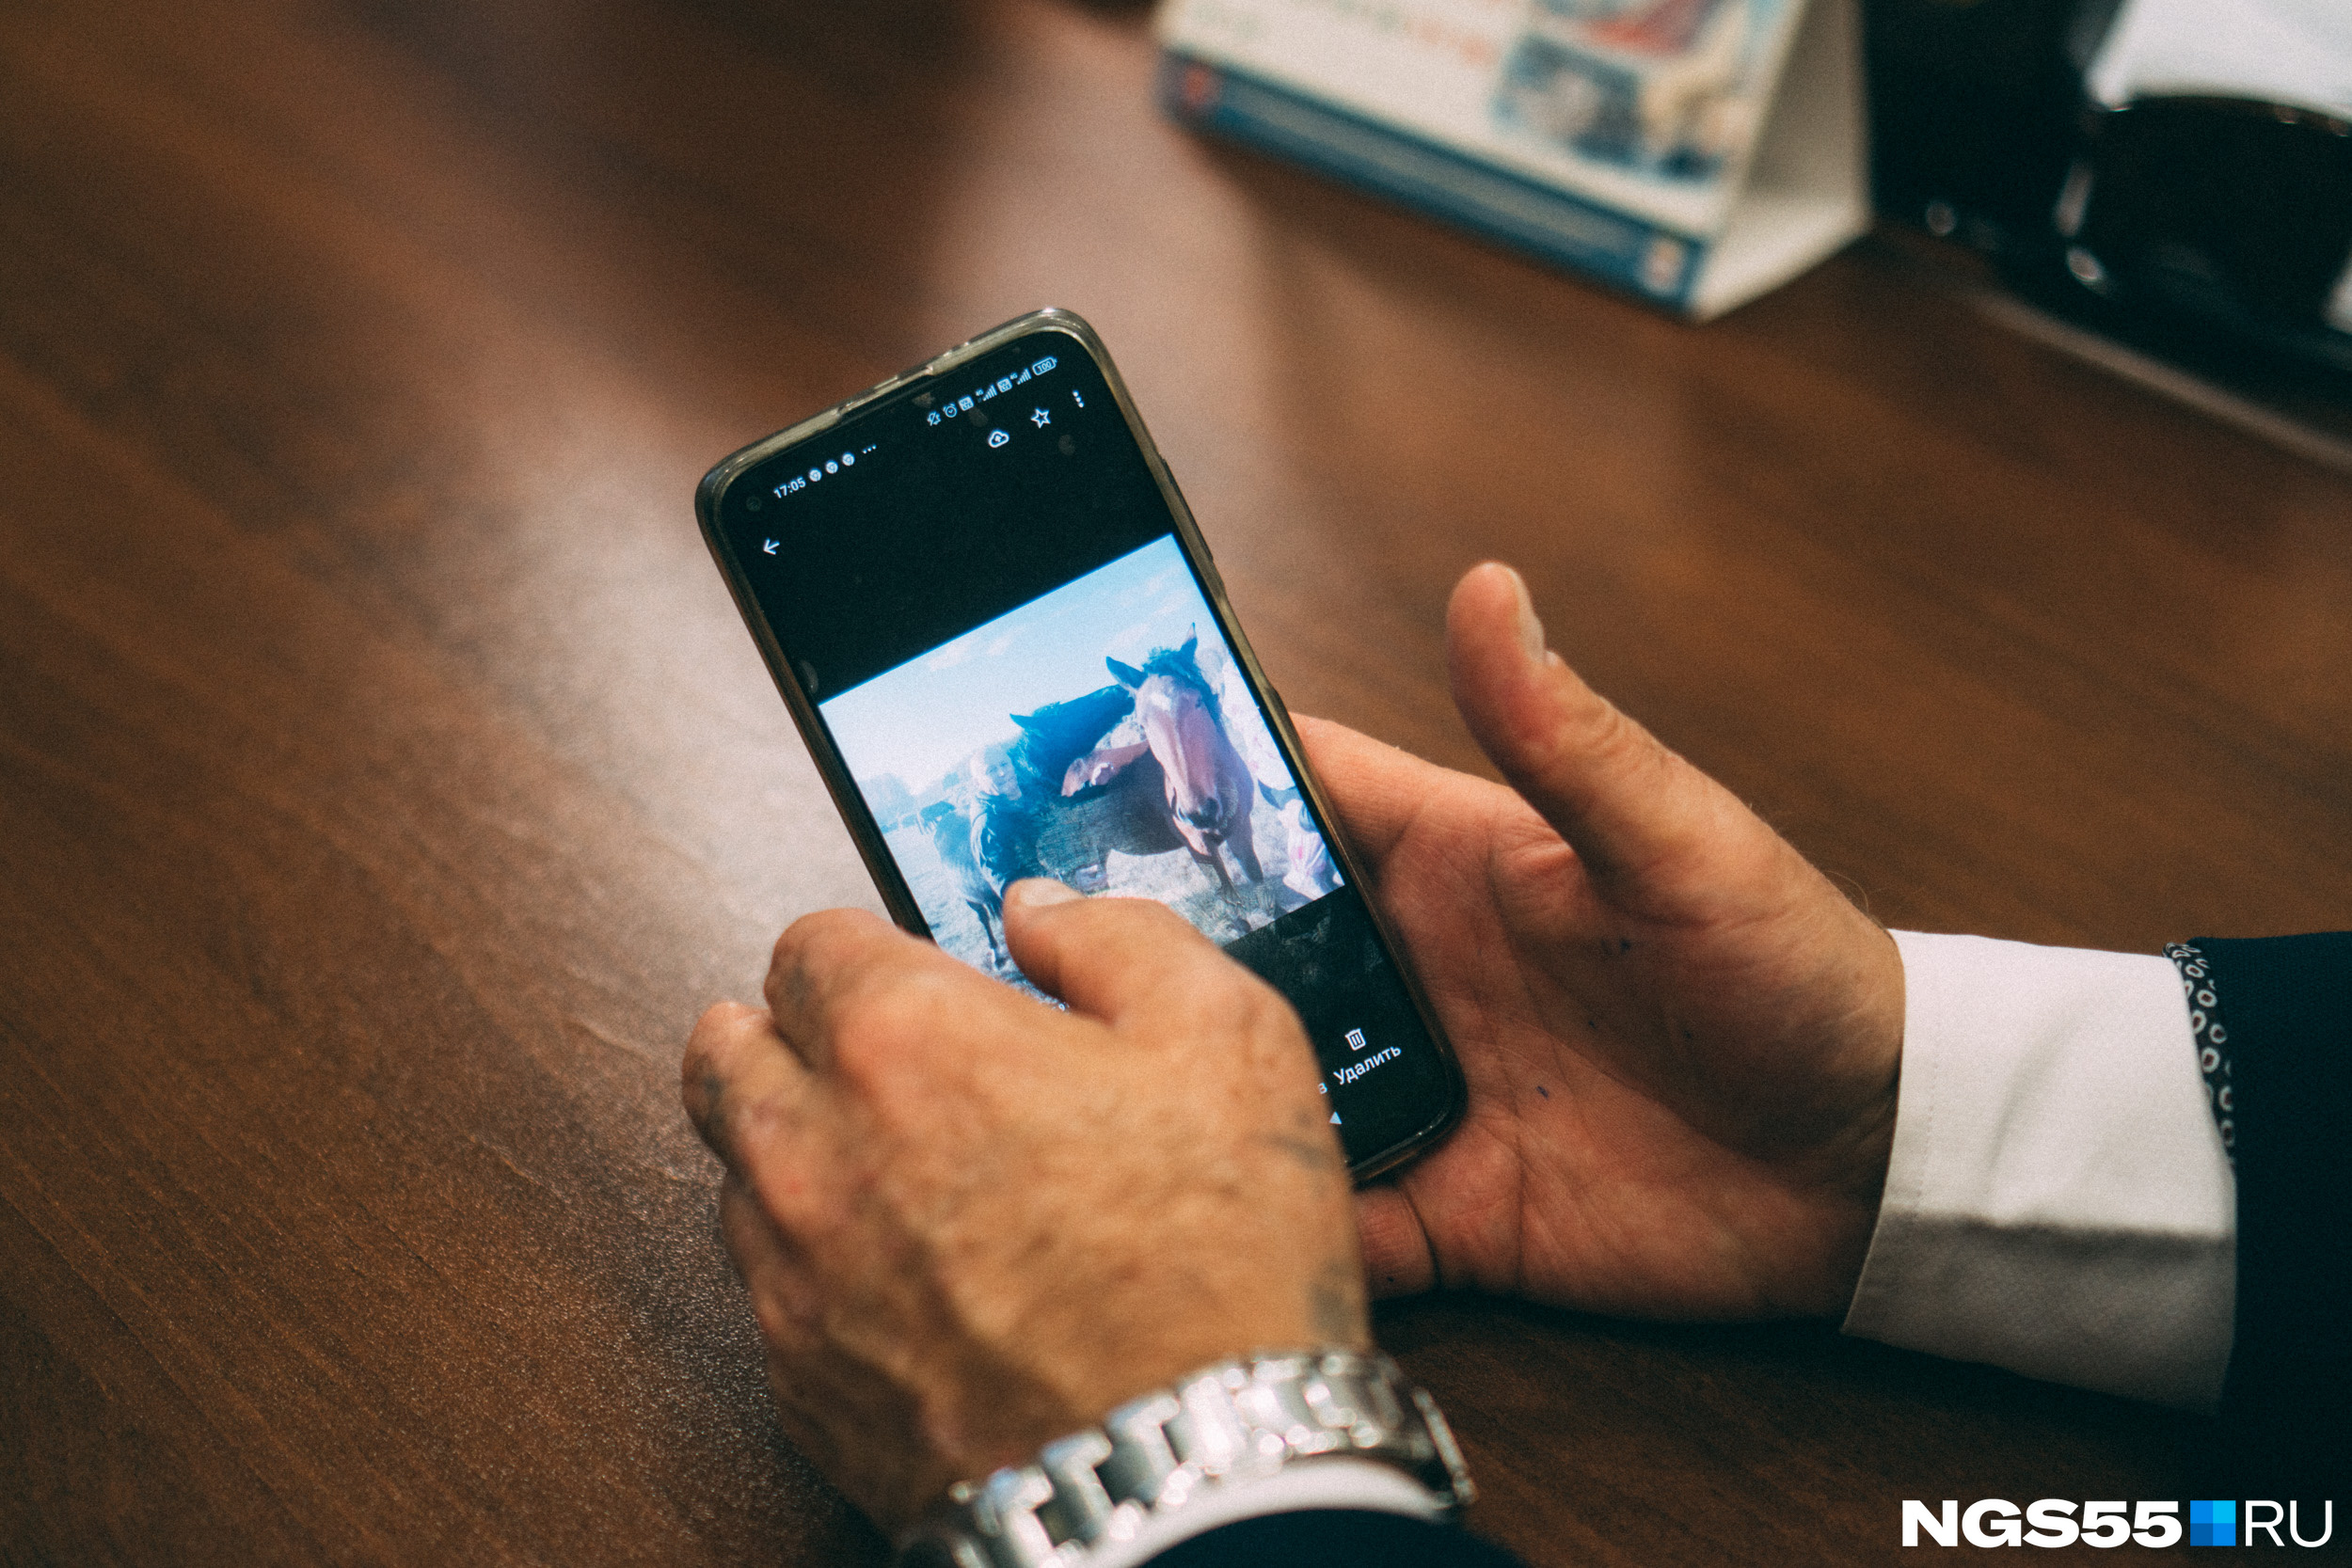 Таких снимков в телефоне Николая Дрофы огромная гора. Чиновник с легкостью называет породу каждой лошади